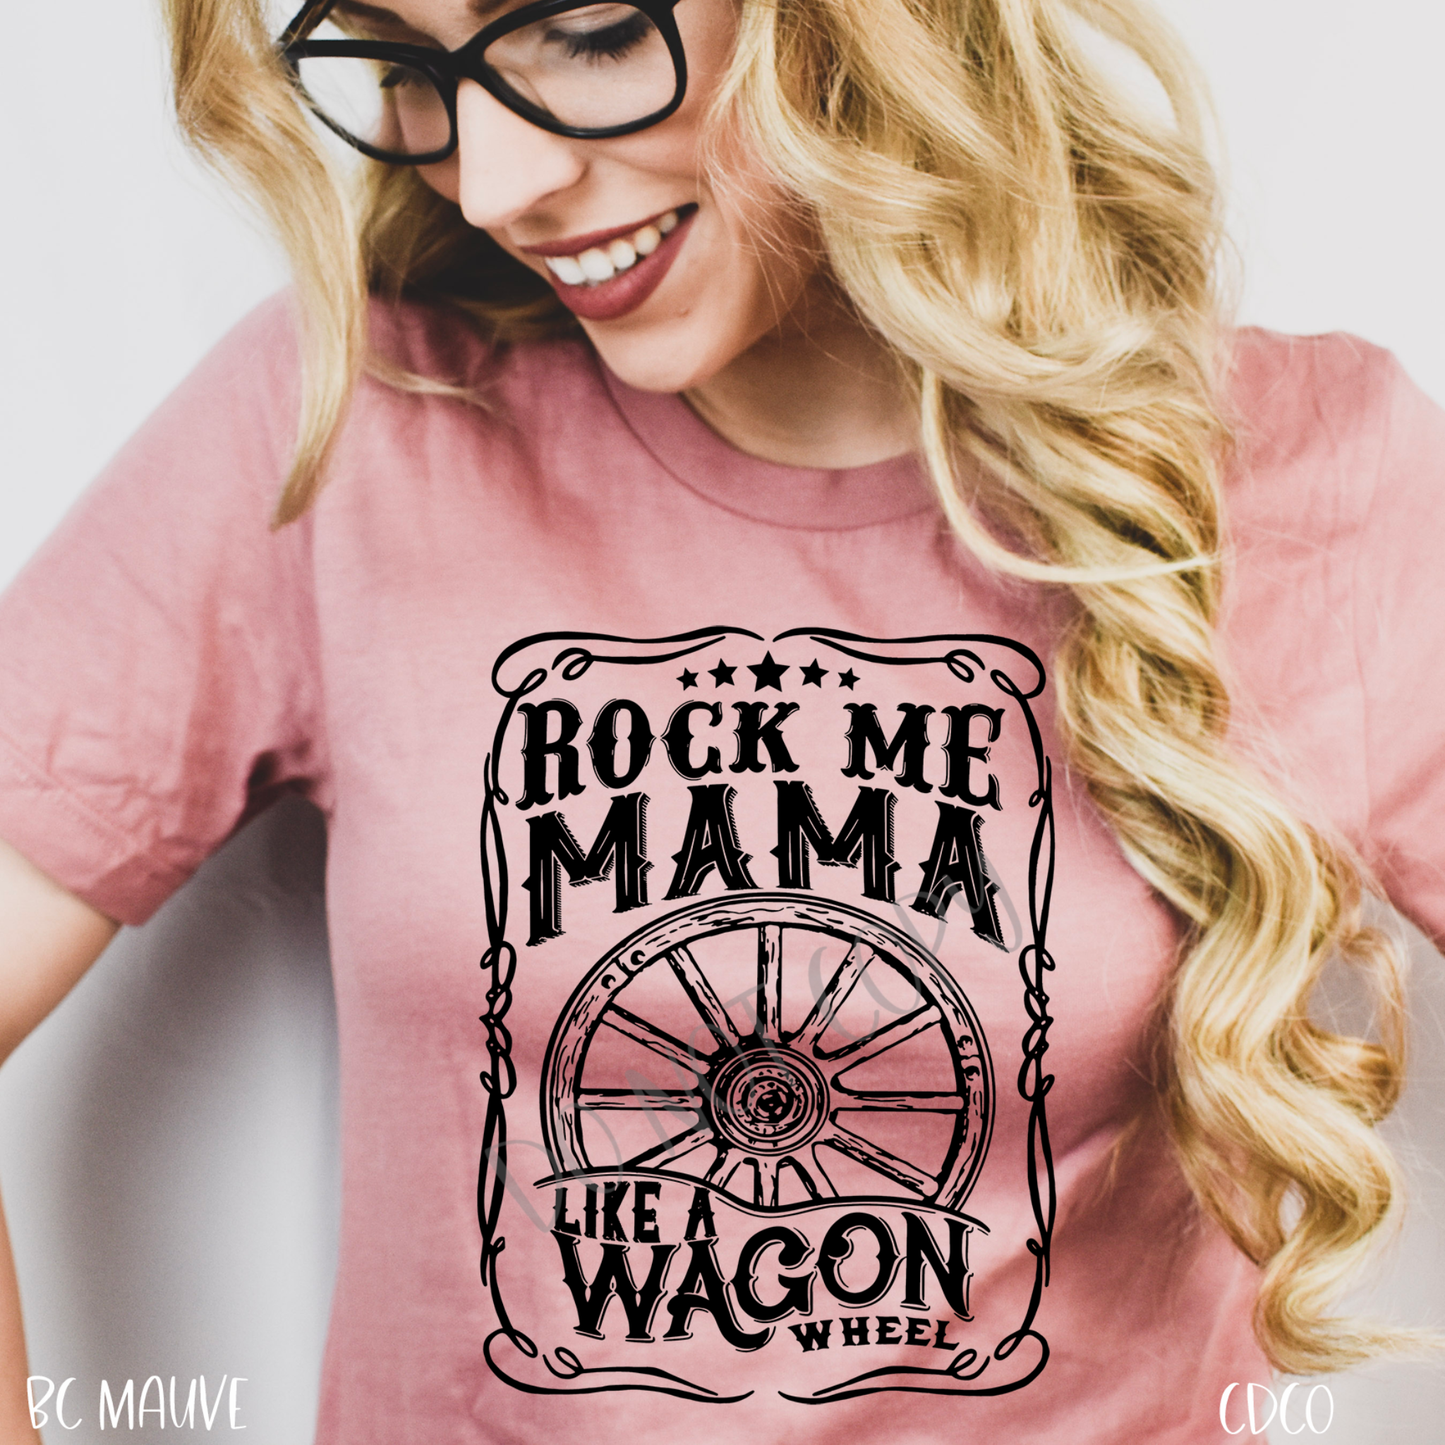 Rock Me Mama Like a Wagon Wheel (325°)